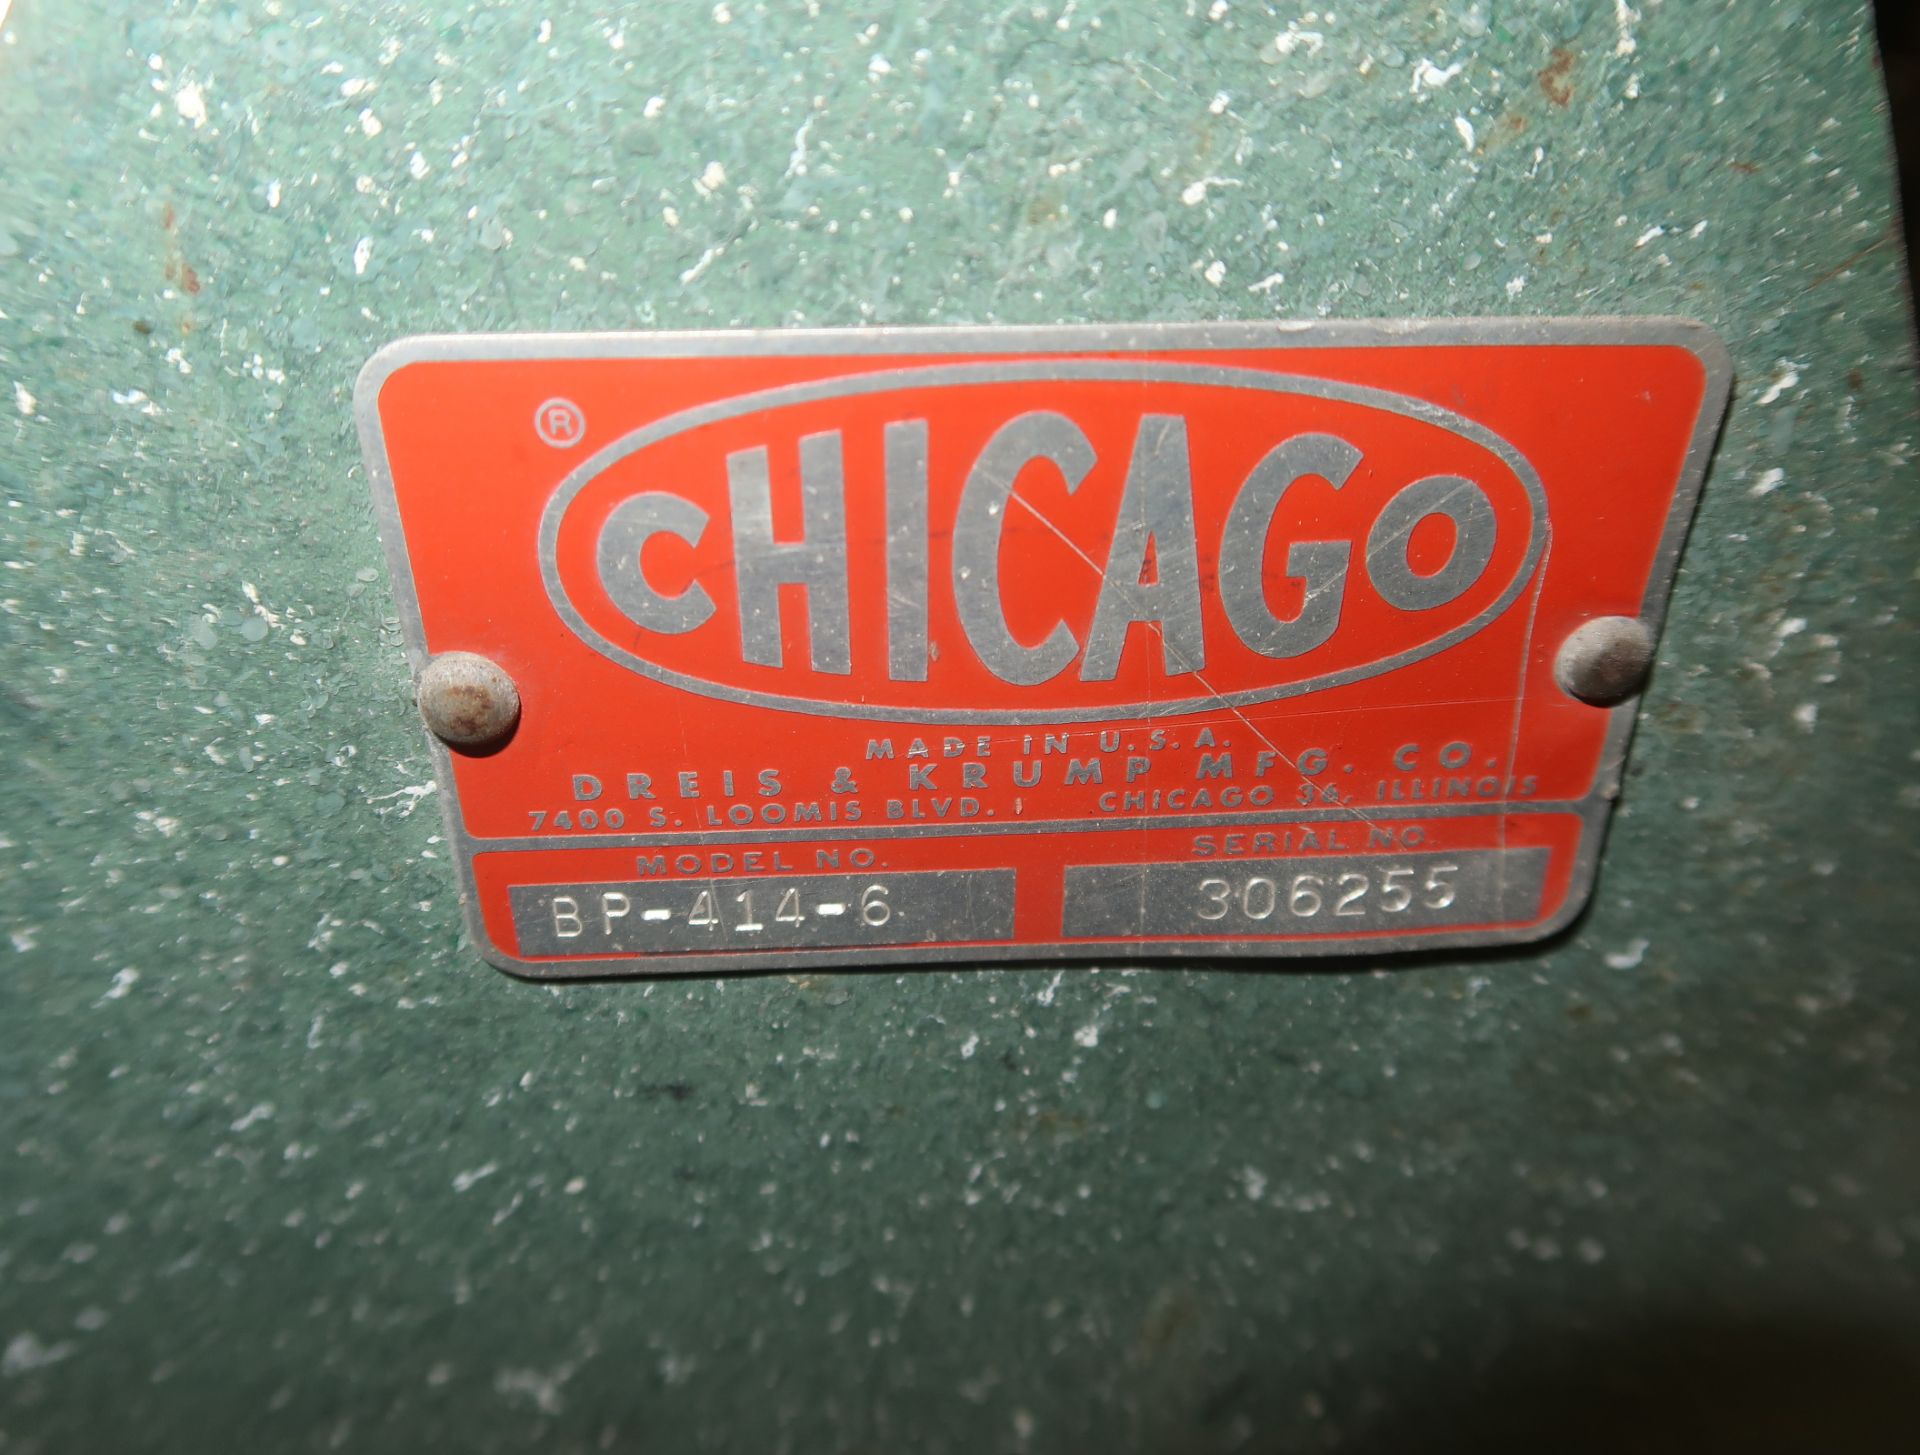 CHICAGO MDL. BP-414-6, 4' X 14GA BOX & PAN BRAKE SN. 306255 - Image 3 of 3